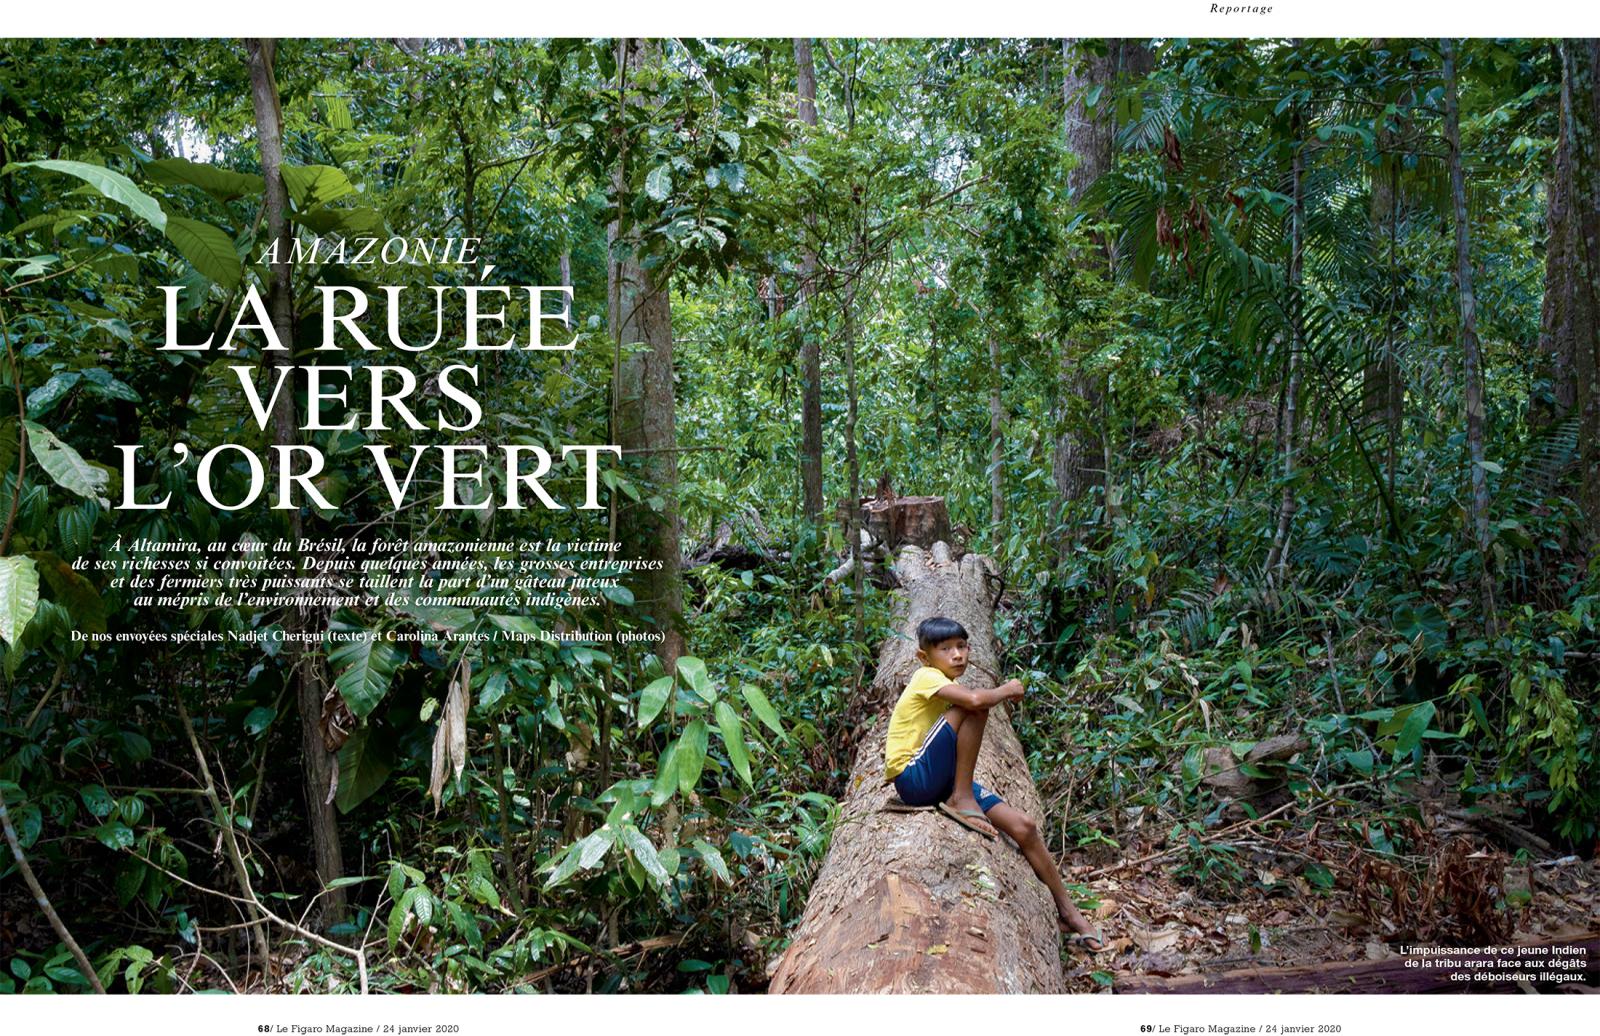 Amazonia Story @Le Figaro Magazine 